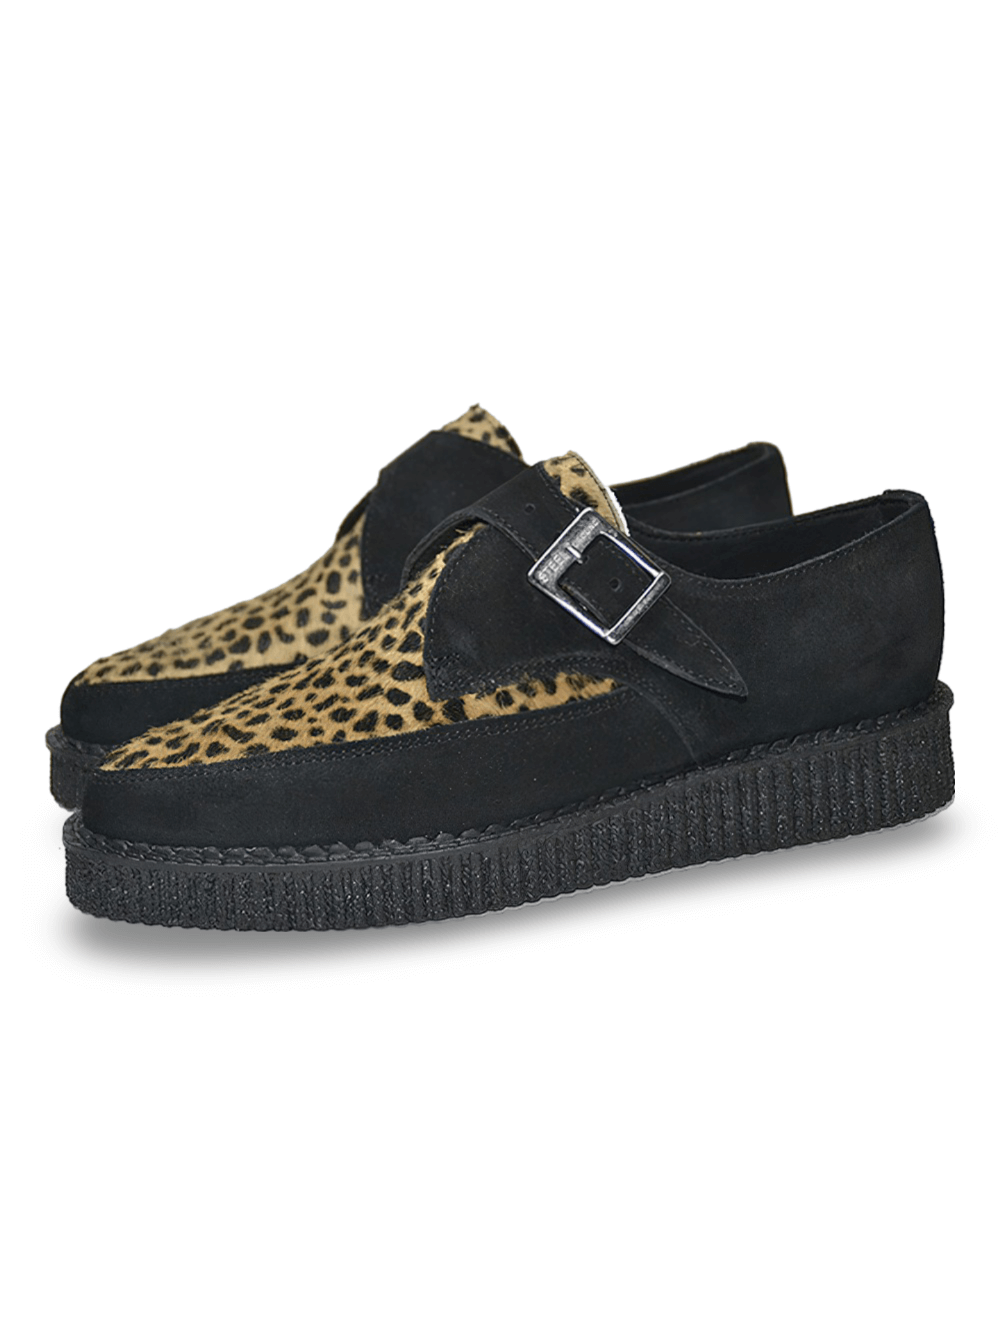 Chaussures Creeper unisexes à lacets noires et léopard